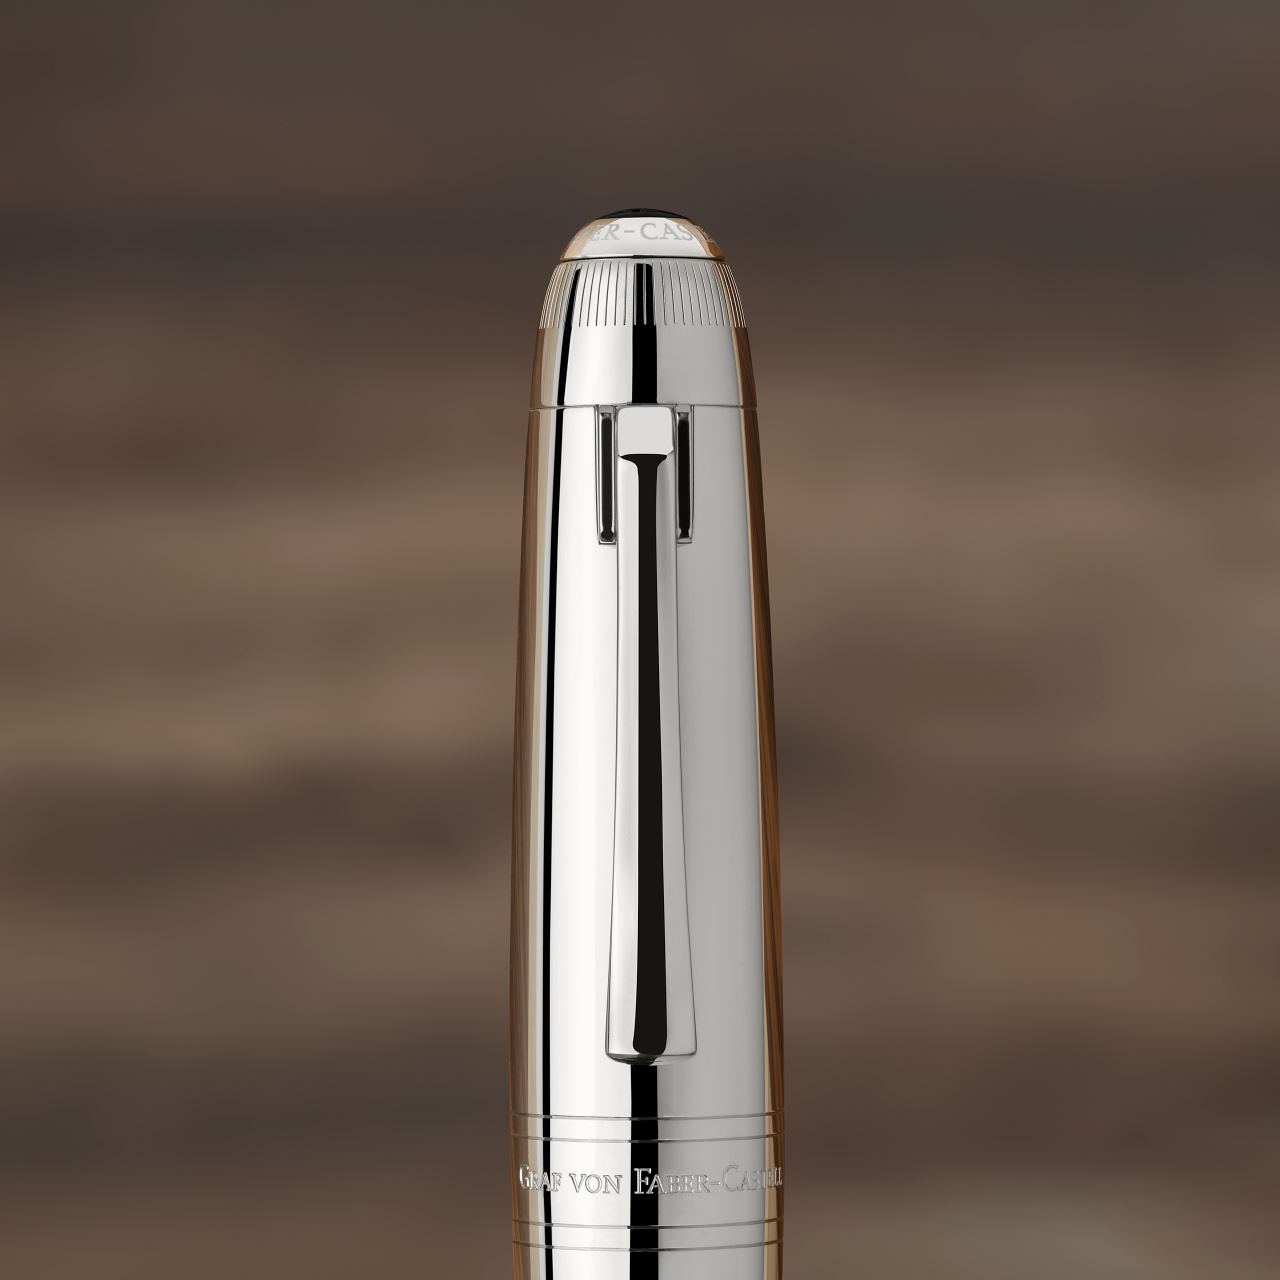 Graf-von-Faber-Castell - Fountain Pen Magnum OM